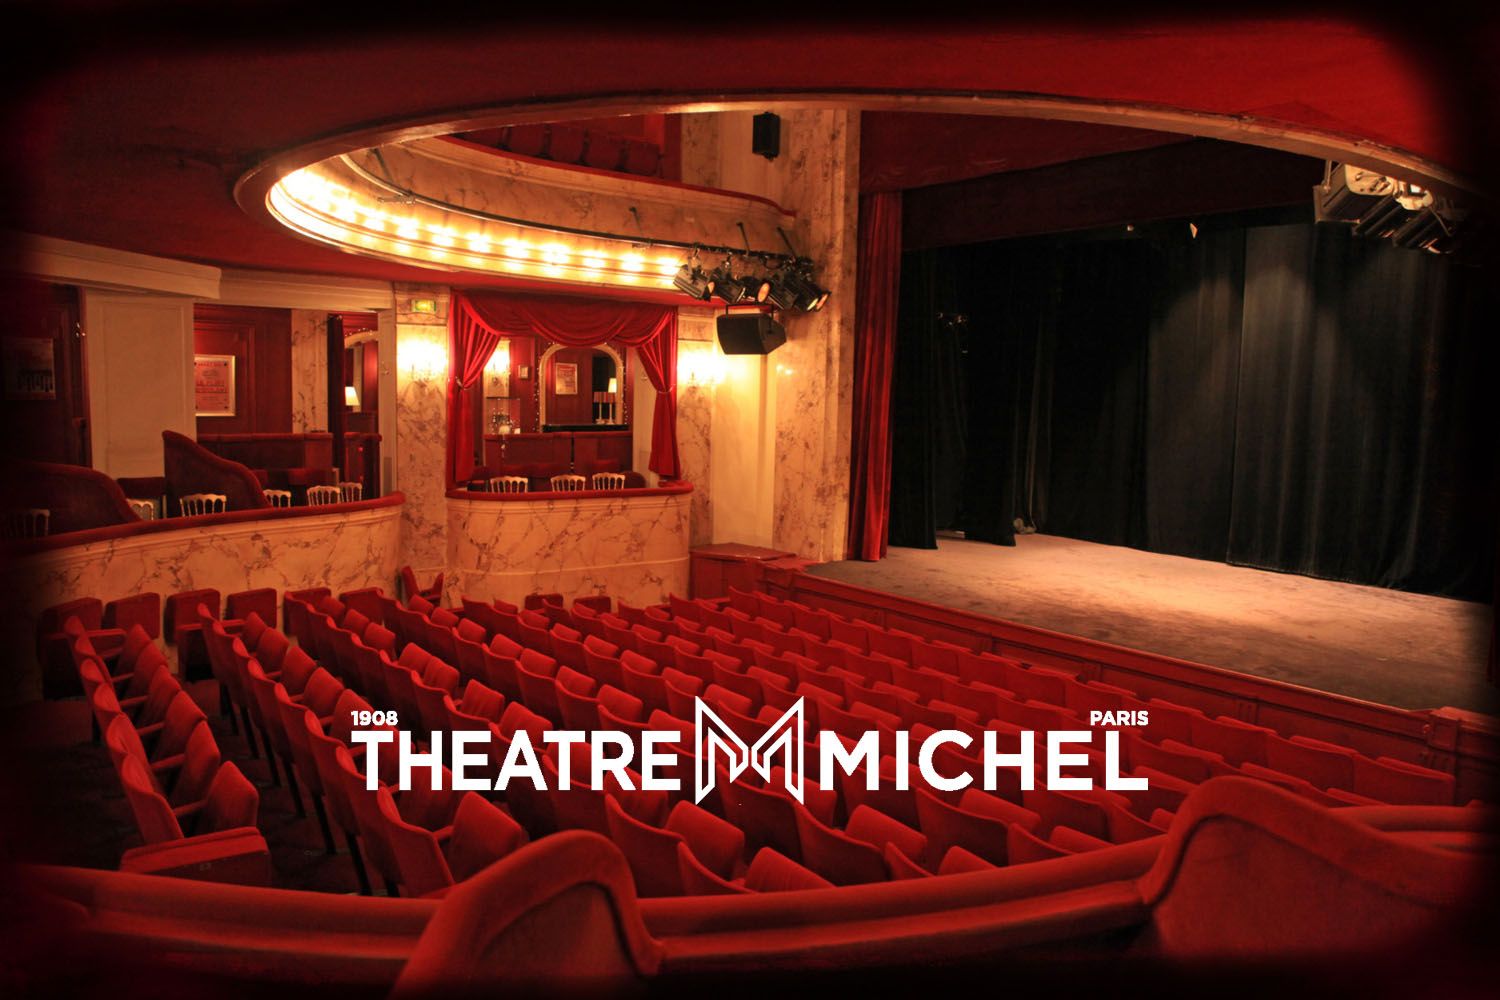 Théâtre Michel Paris